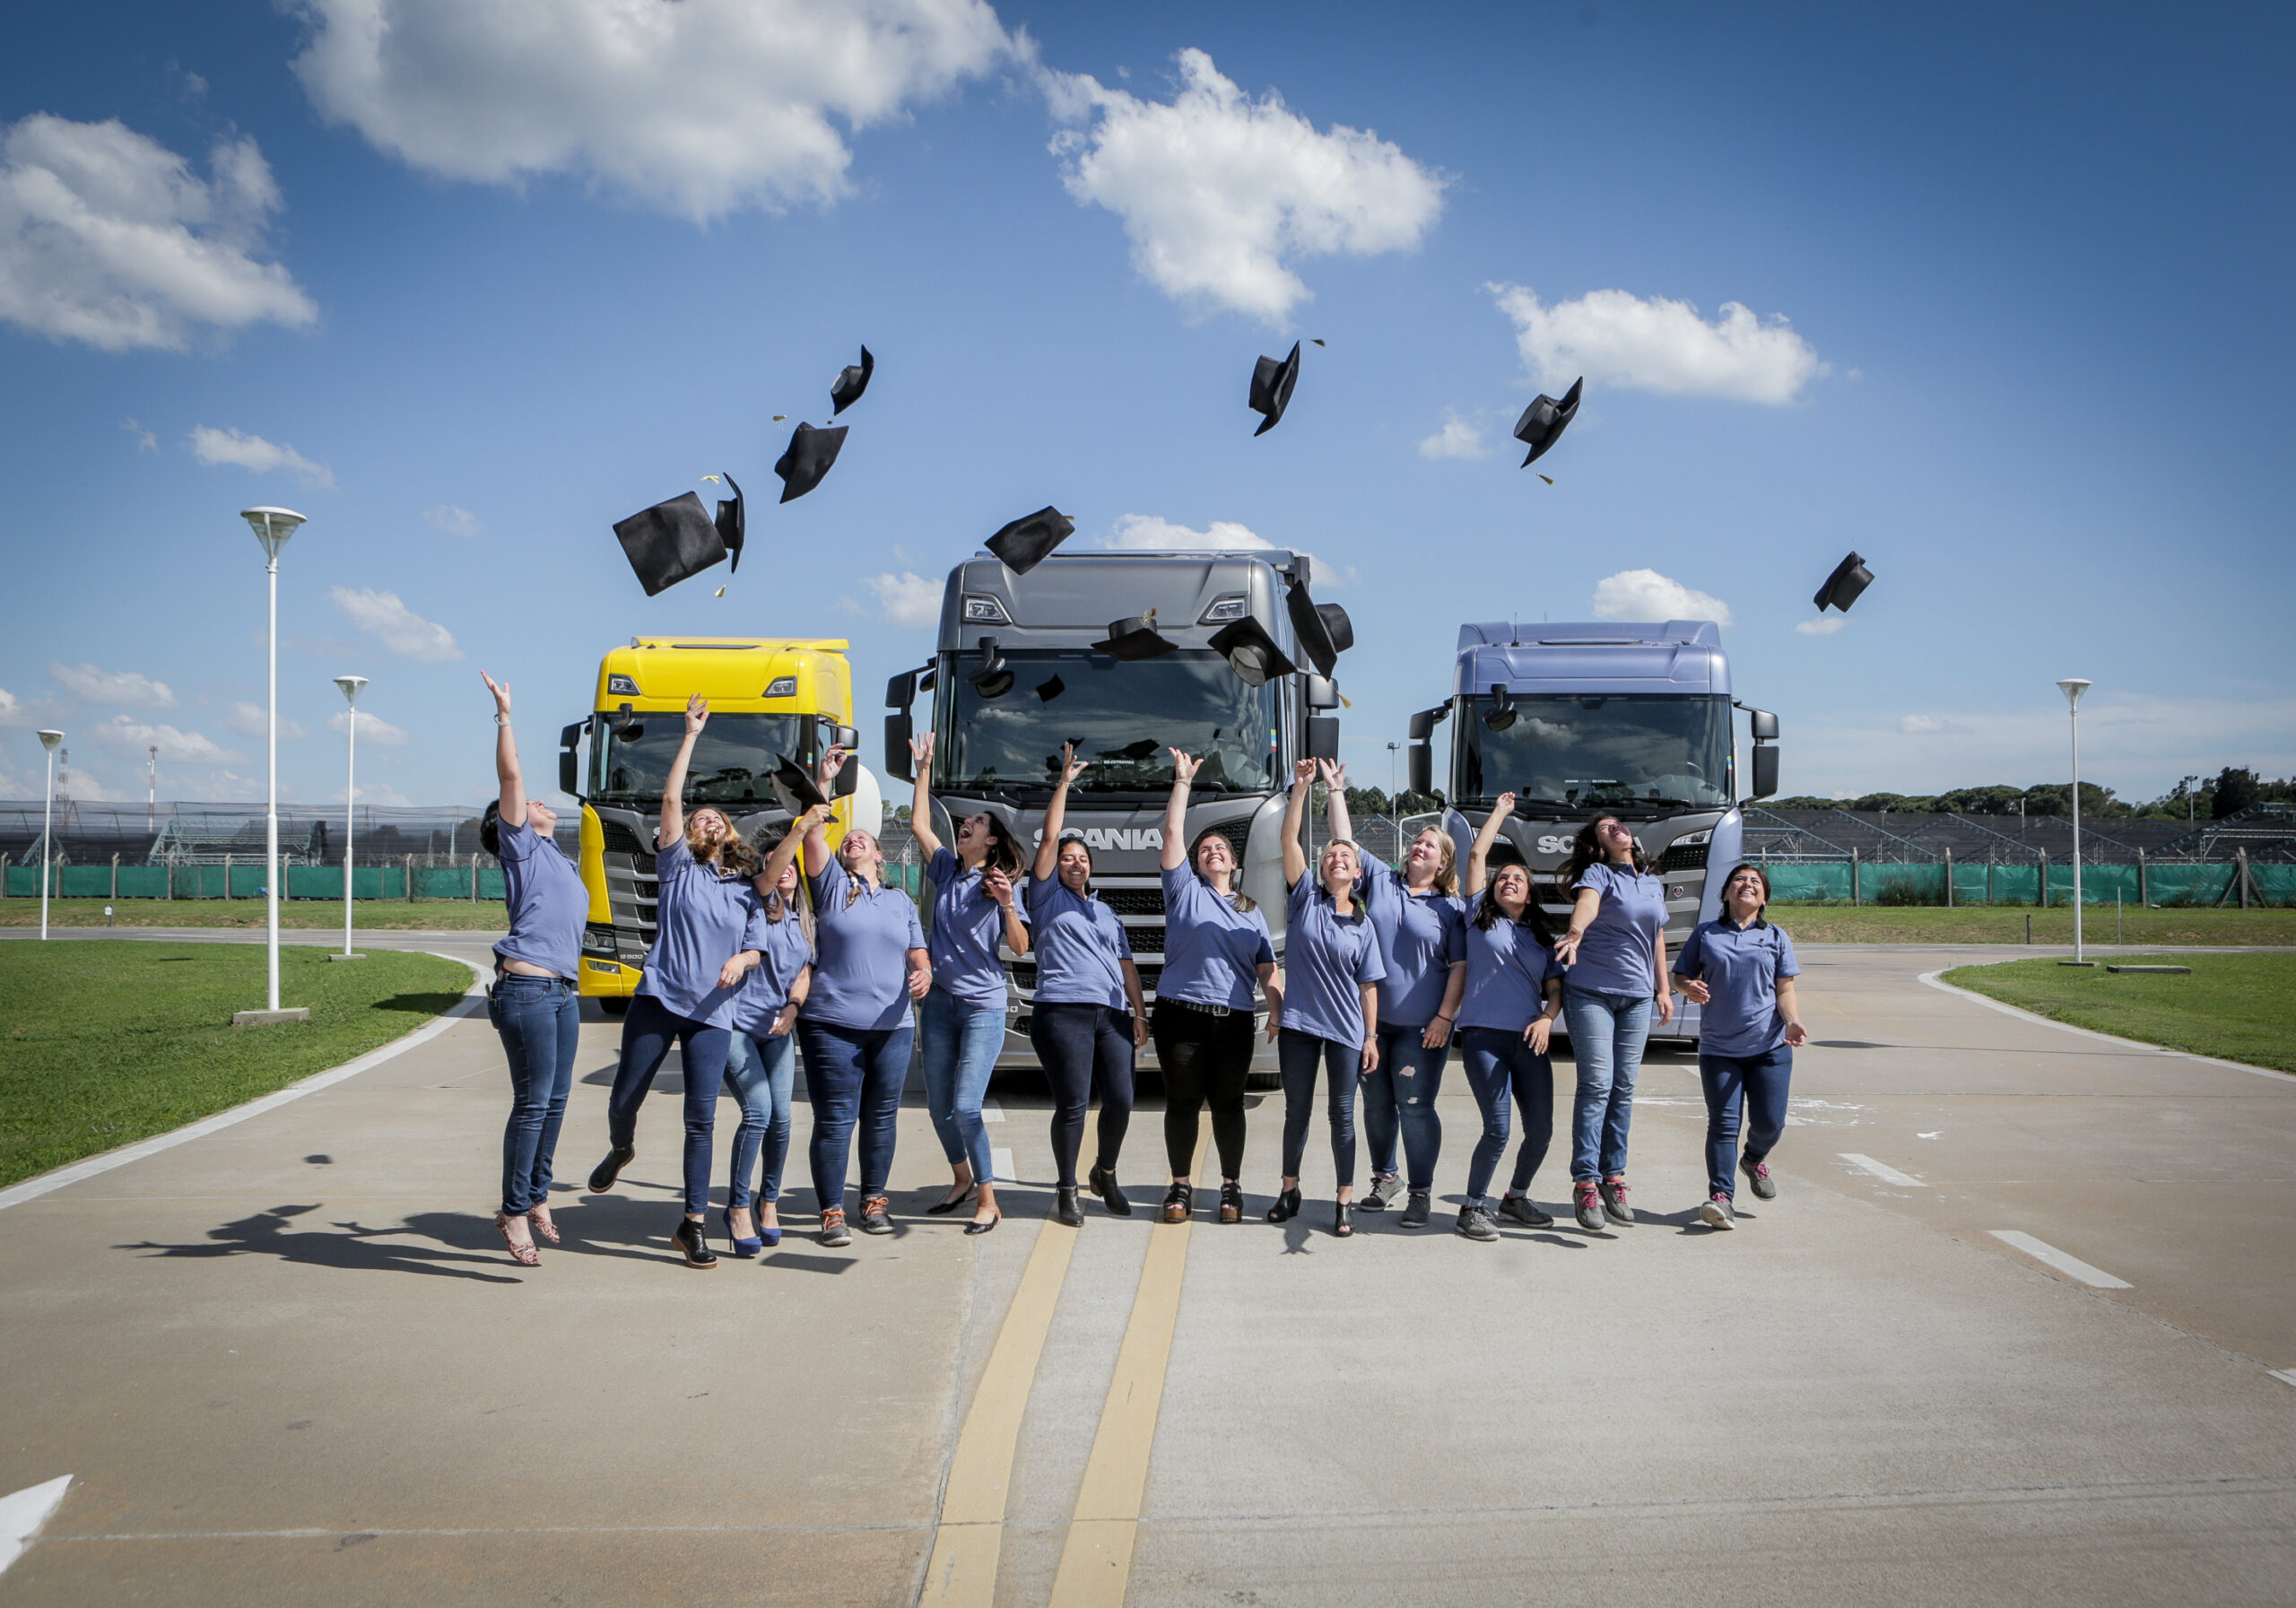 Conductoras: El programa para la formación de choferes de camión mujeres lanzado por Scania